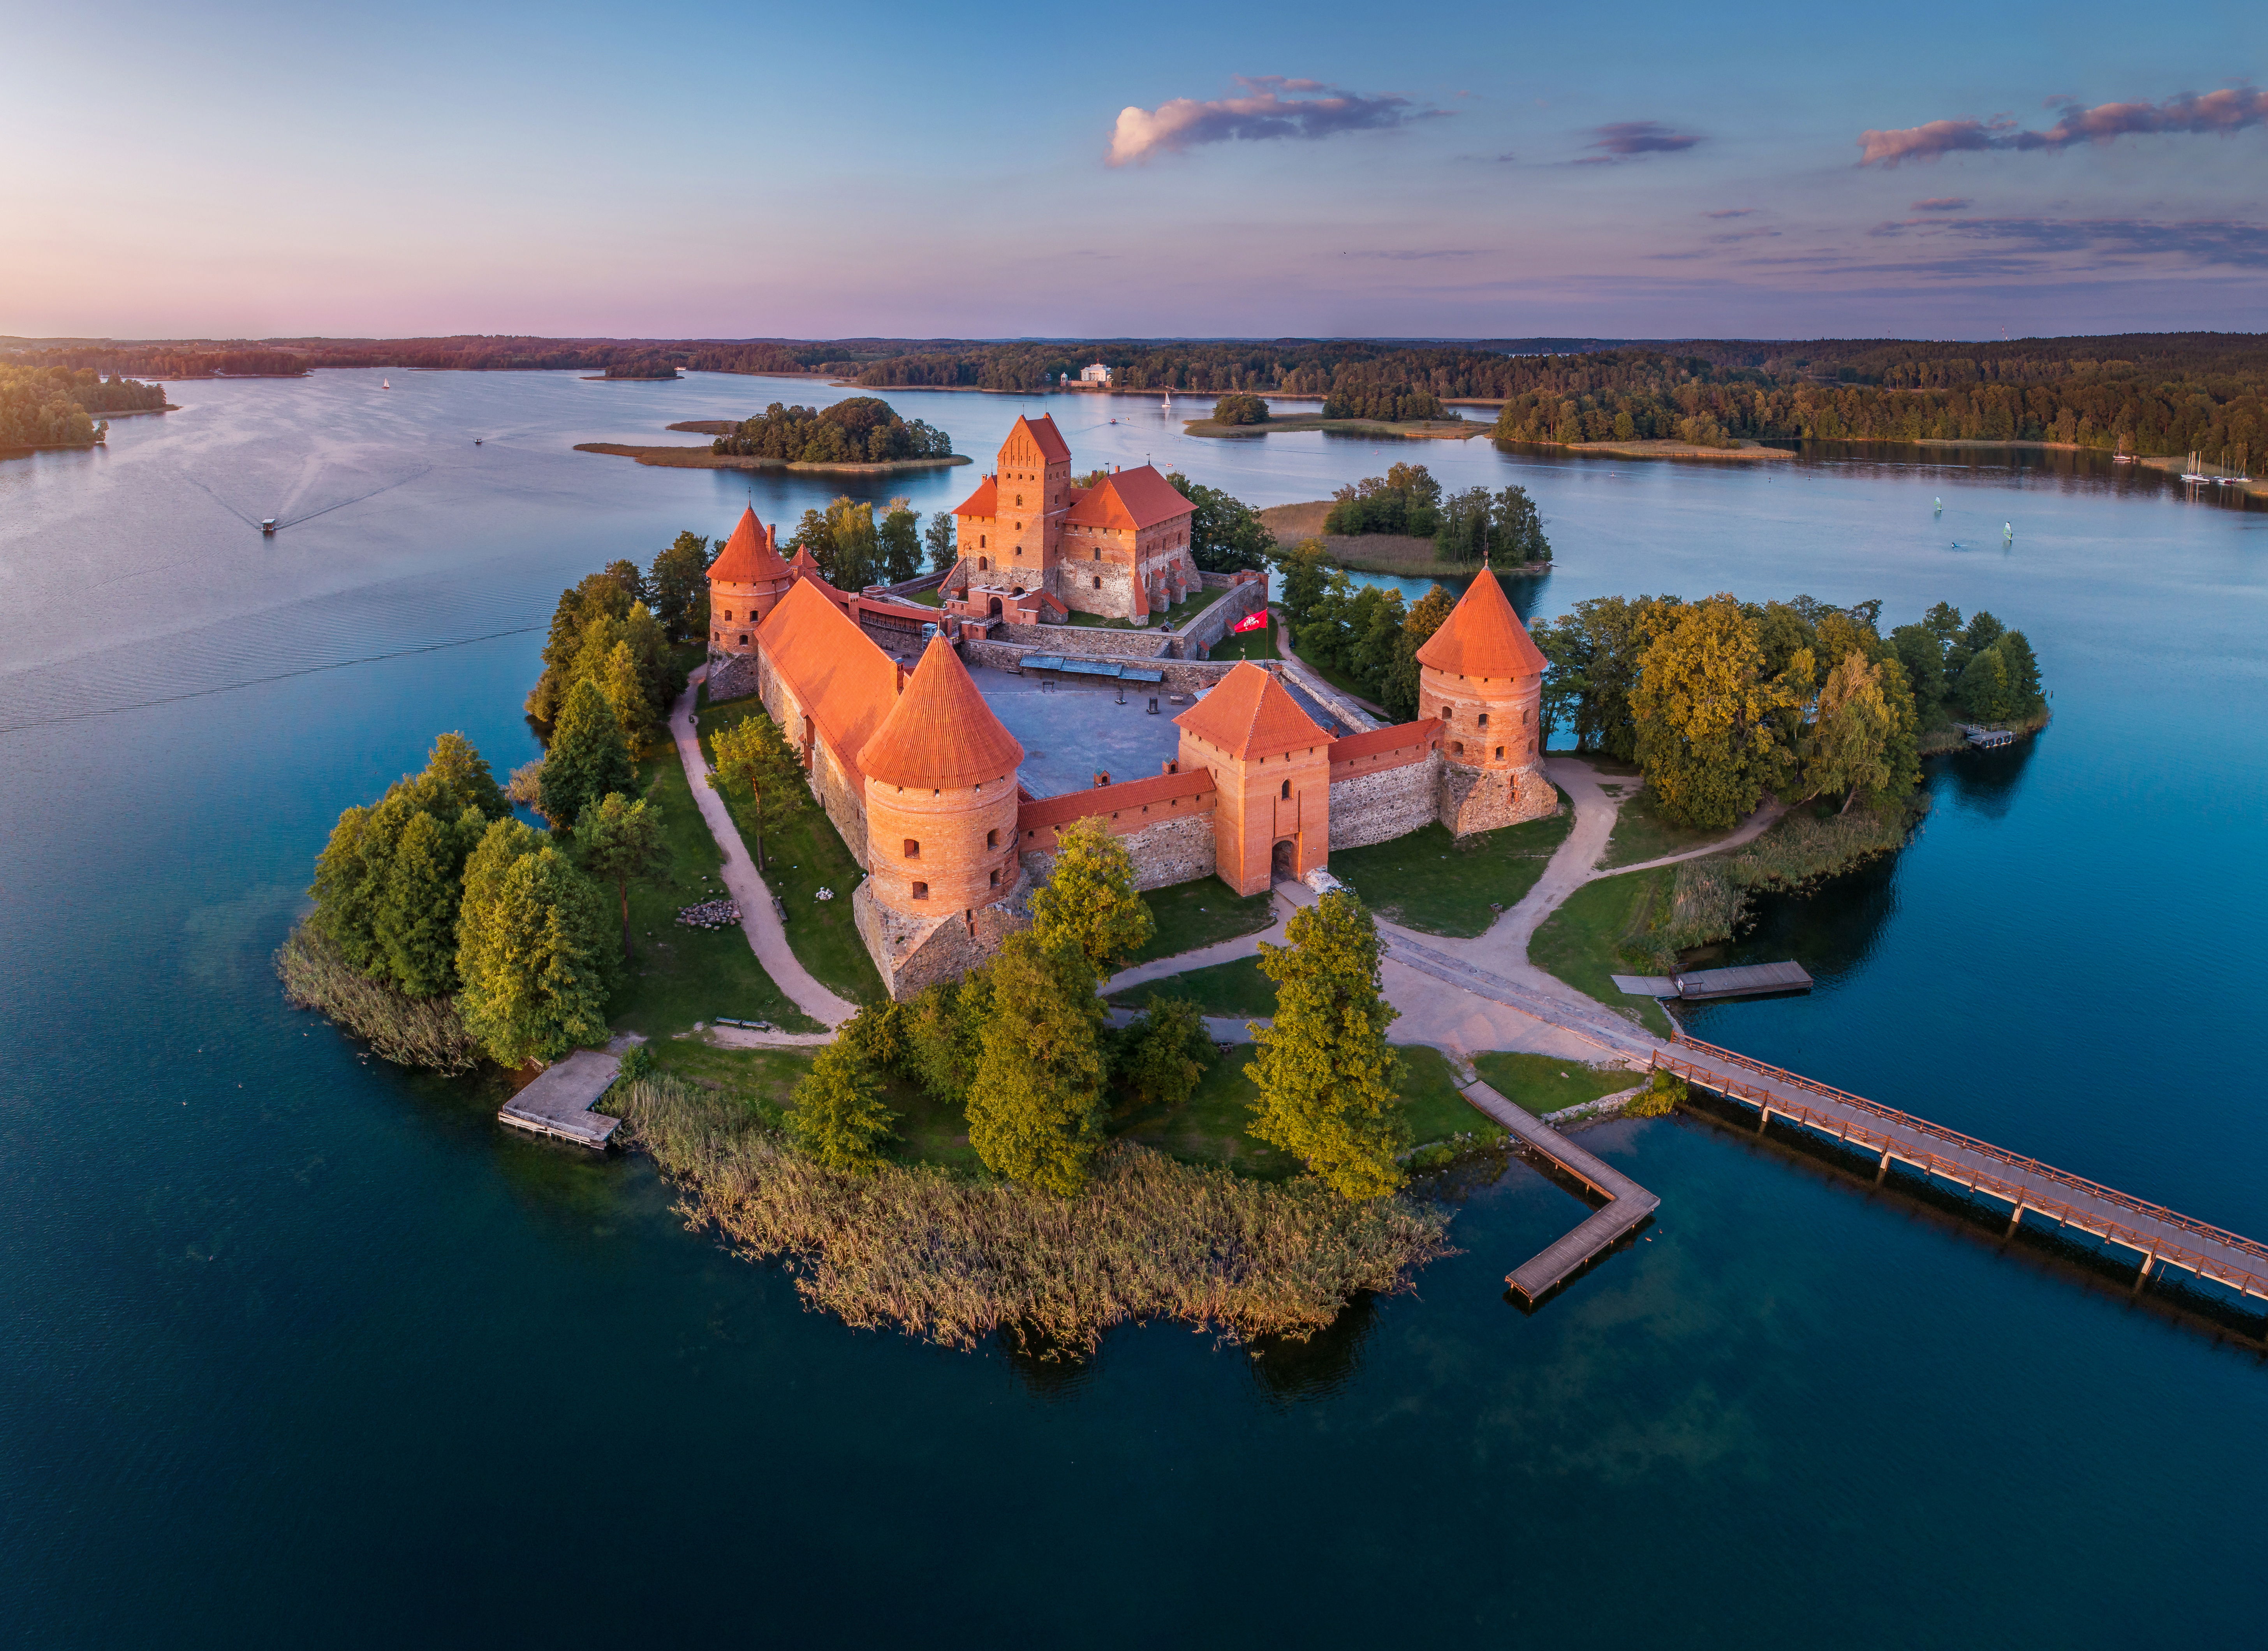 Тракайский замок в Литве, ПМЖ которой могут получить иностранцы